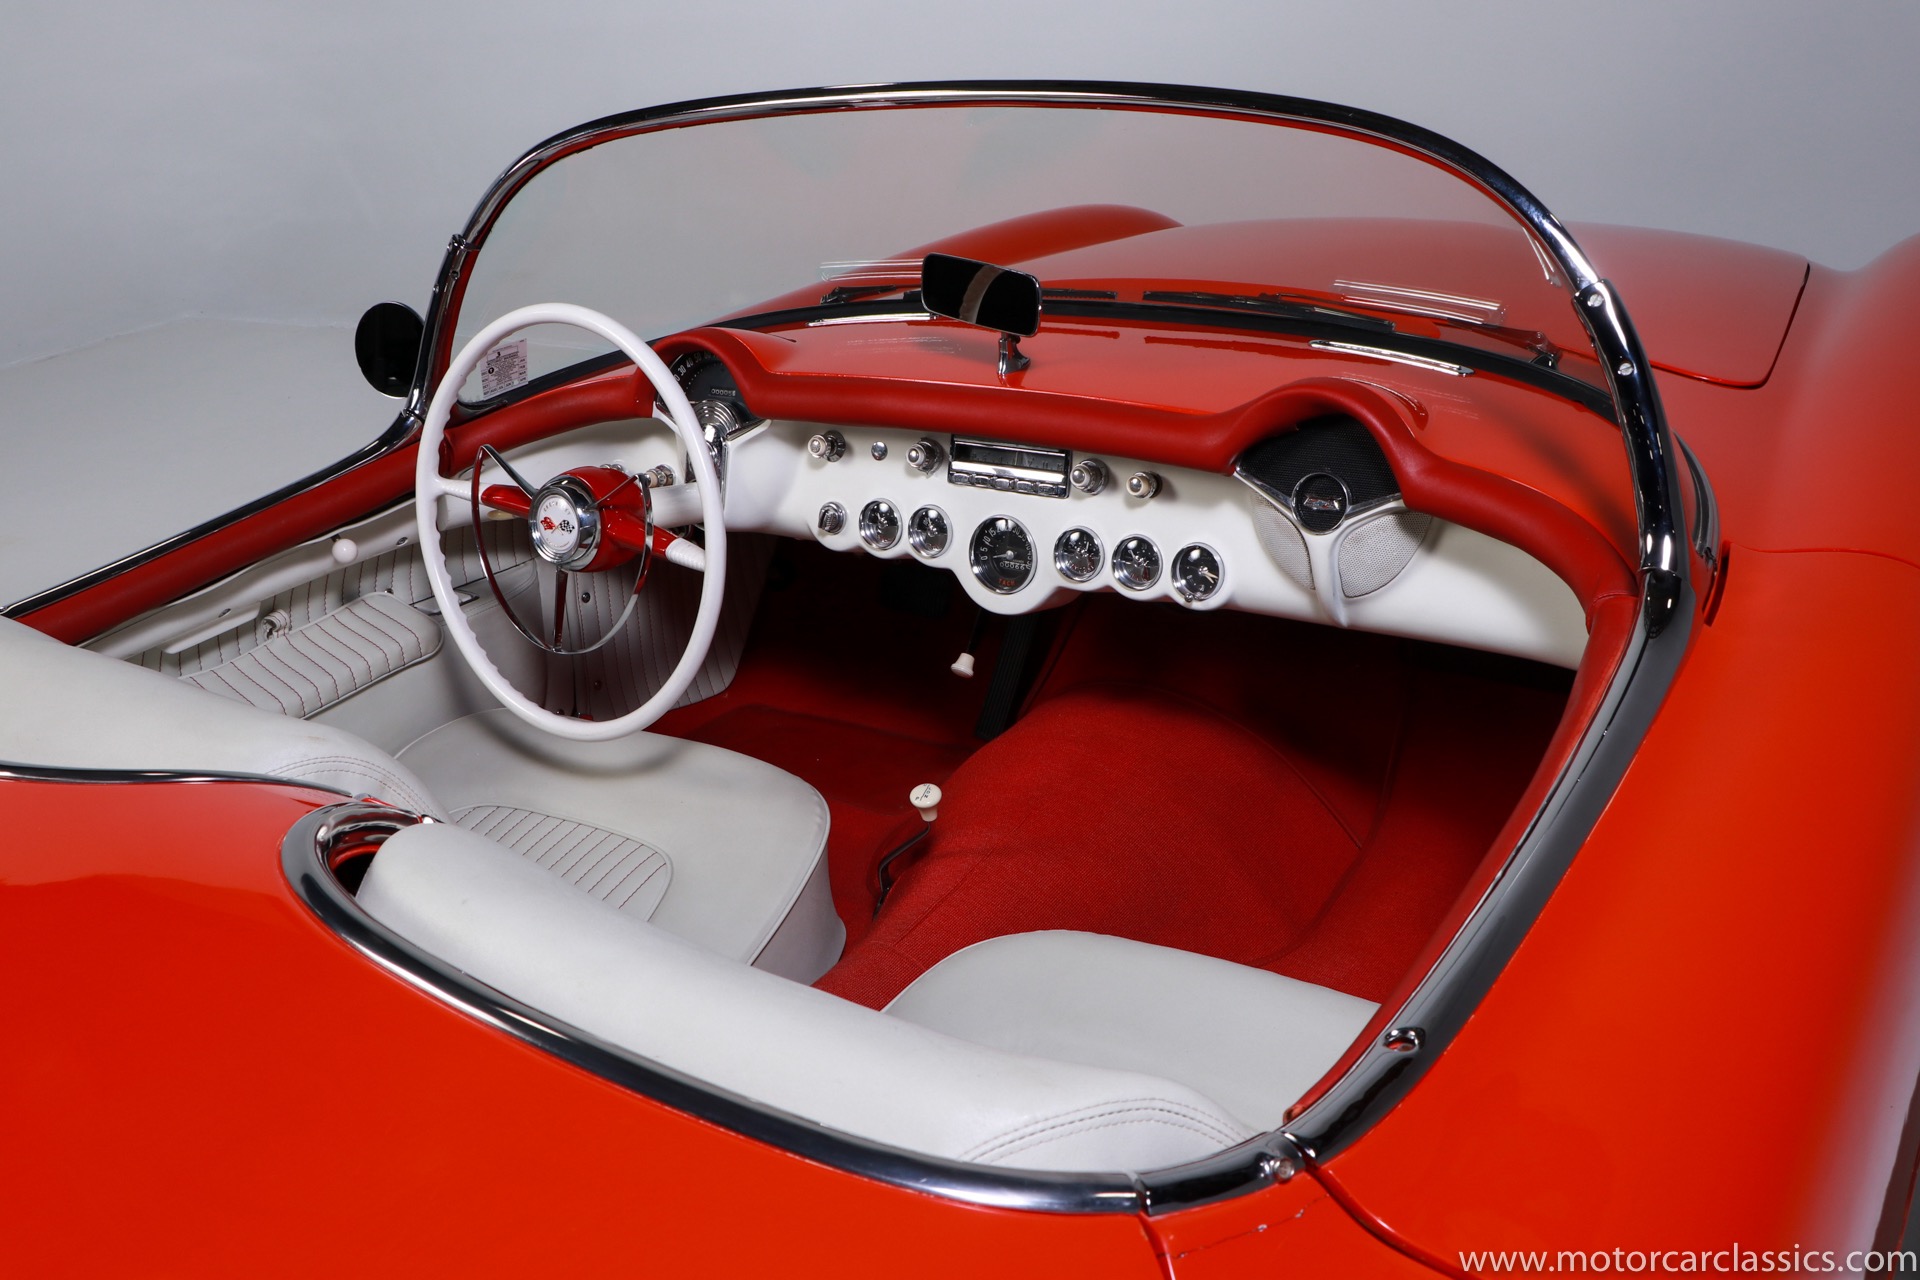 1955 Chevrolet Corvette 